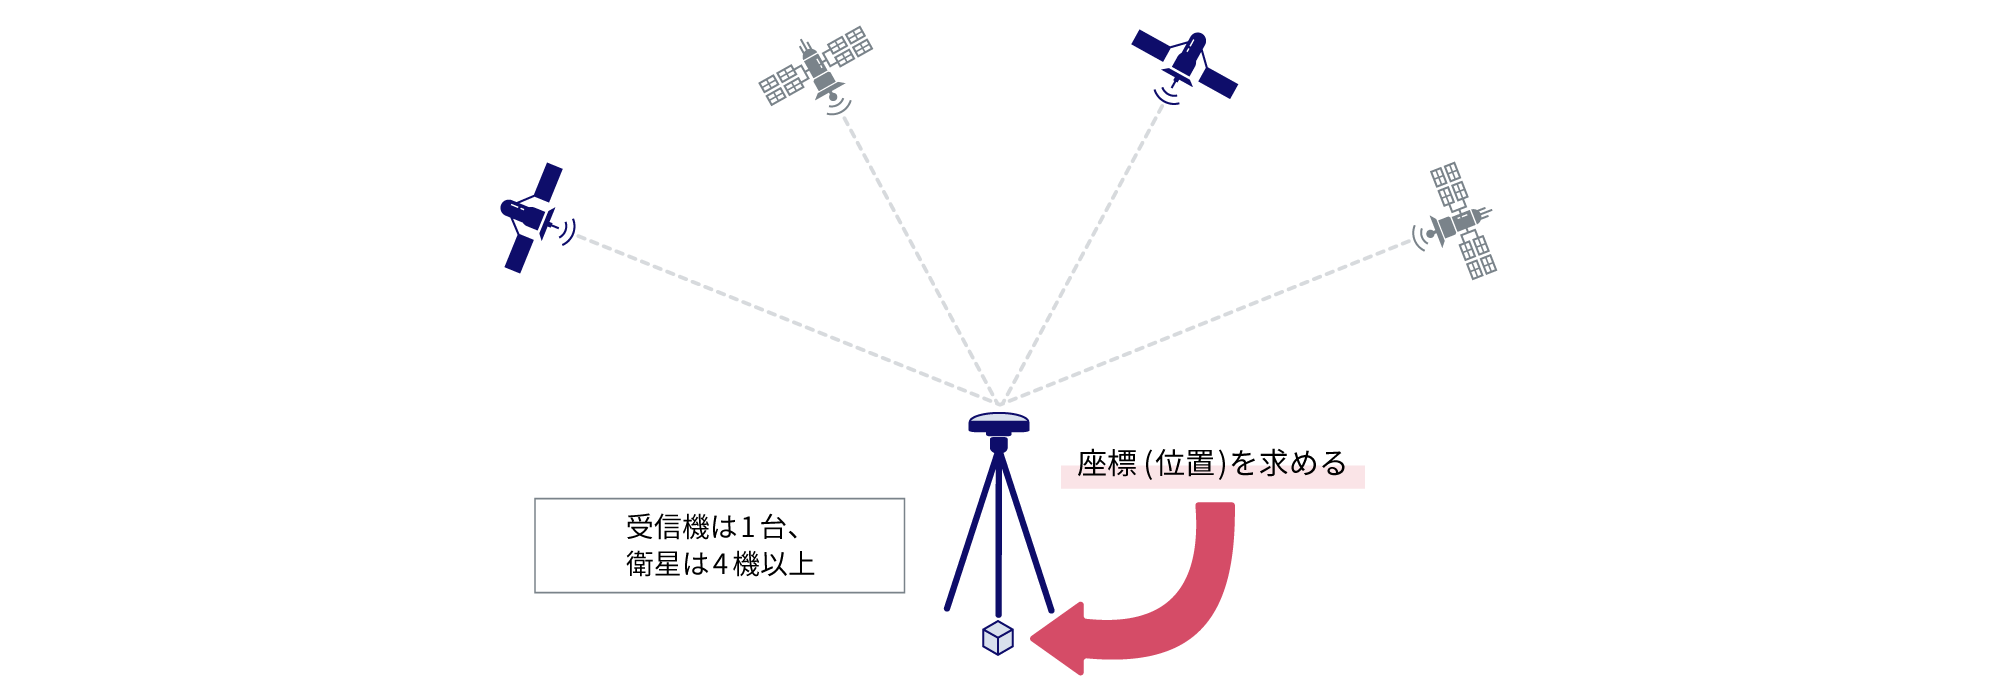 1台の座標 (位置) を決めた受信機と4機以上の衛星の通信を受けて、位置情報を把握する単独測位のイメージ図